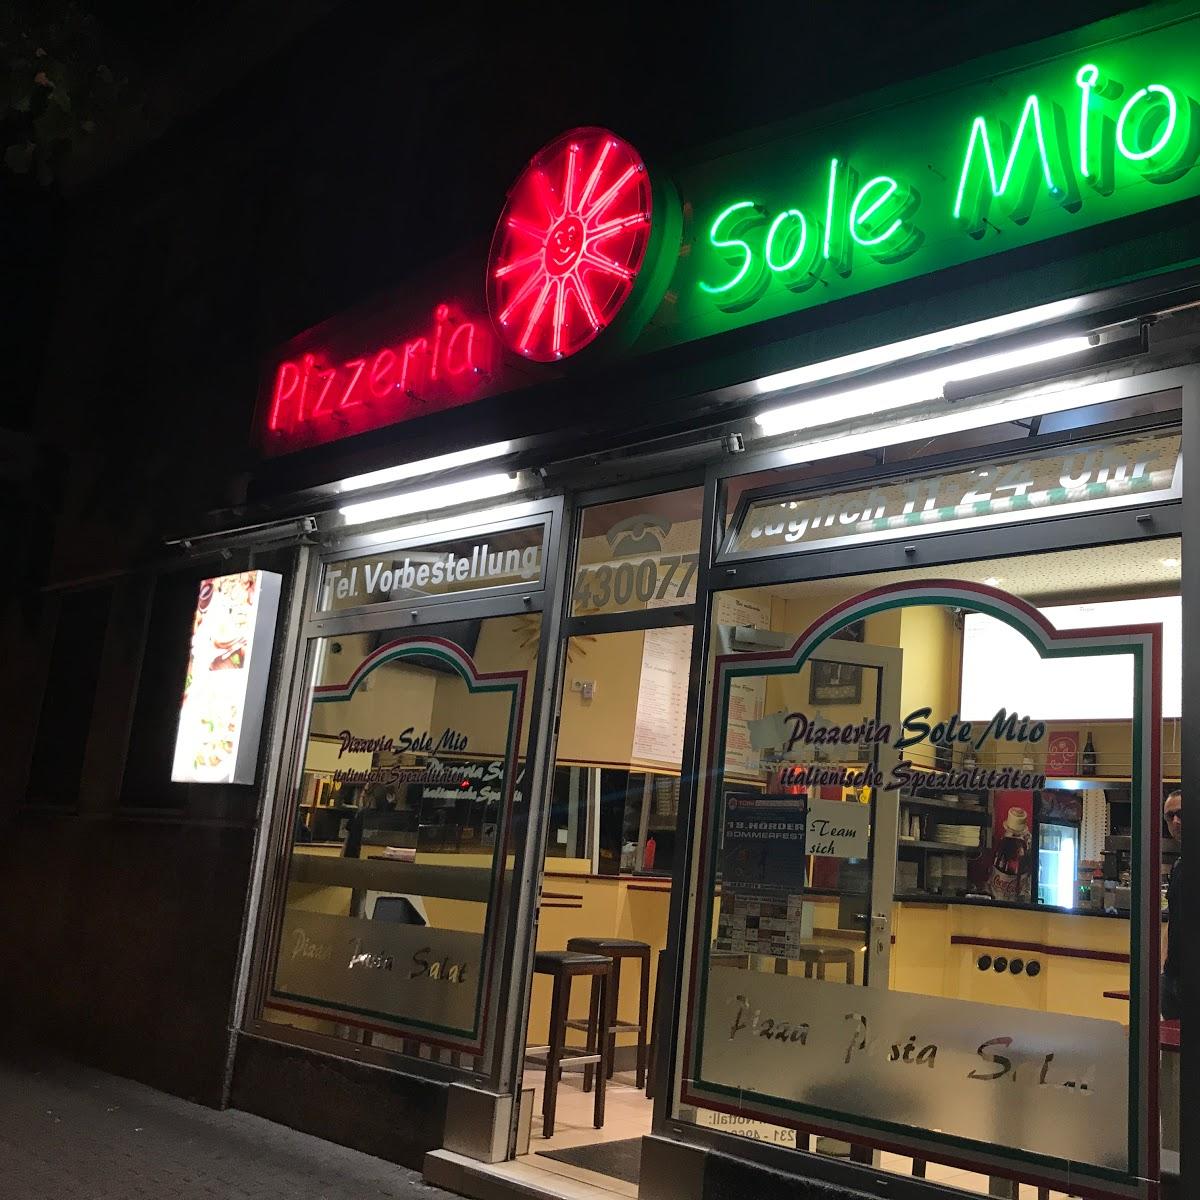 Restaurant "Pizzeria Sole Mio" in Dortmund